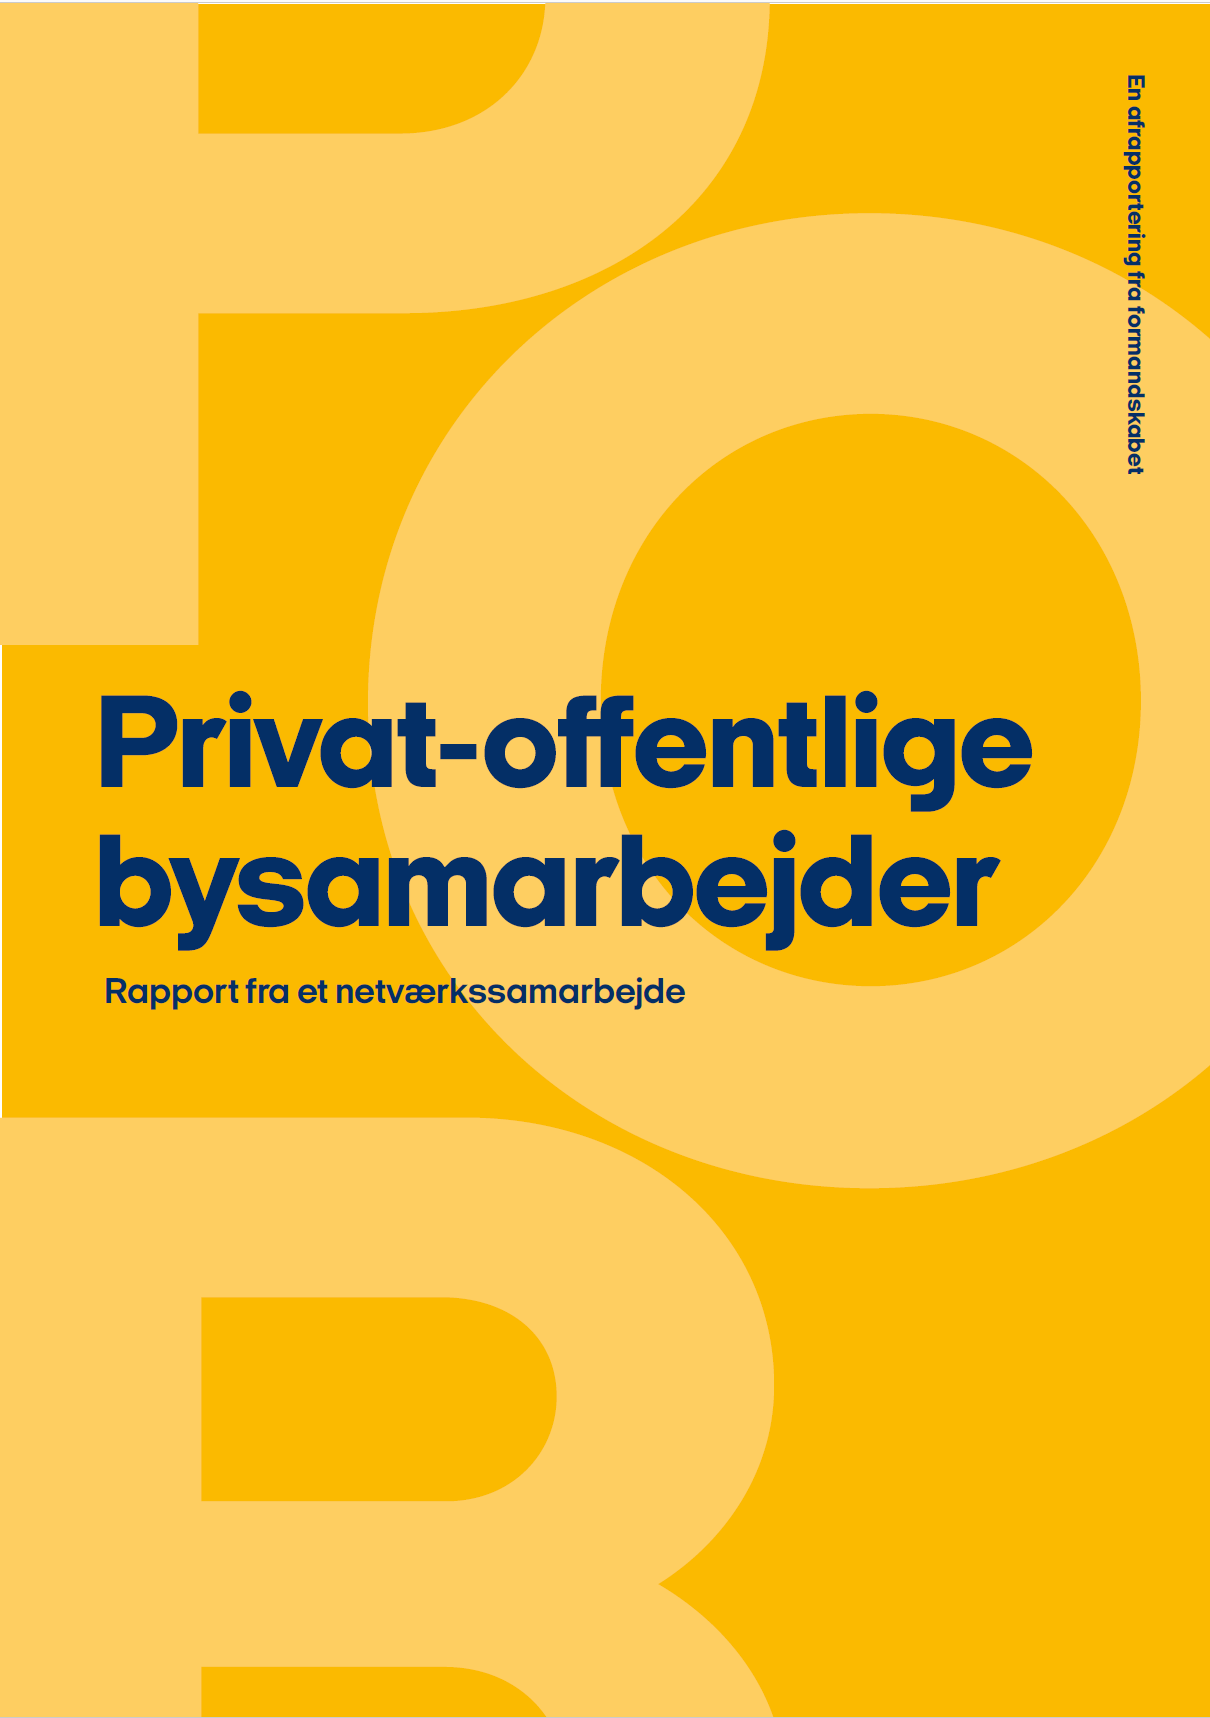 Privat-offentlige bysamarbejder - rapport